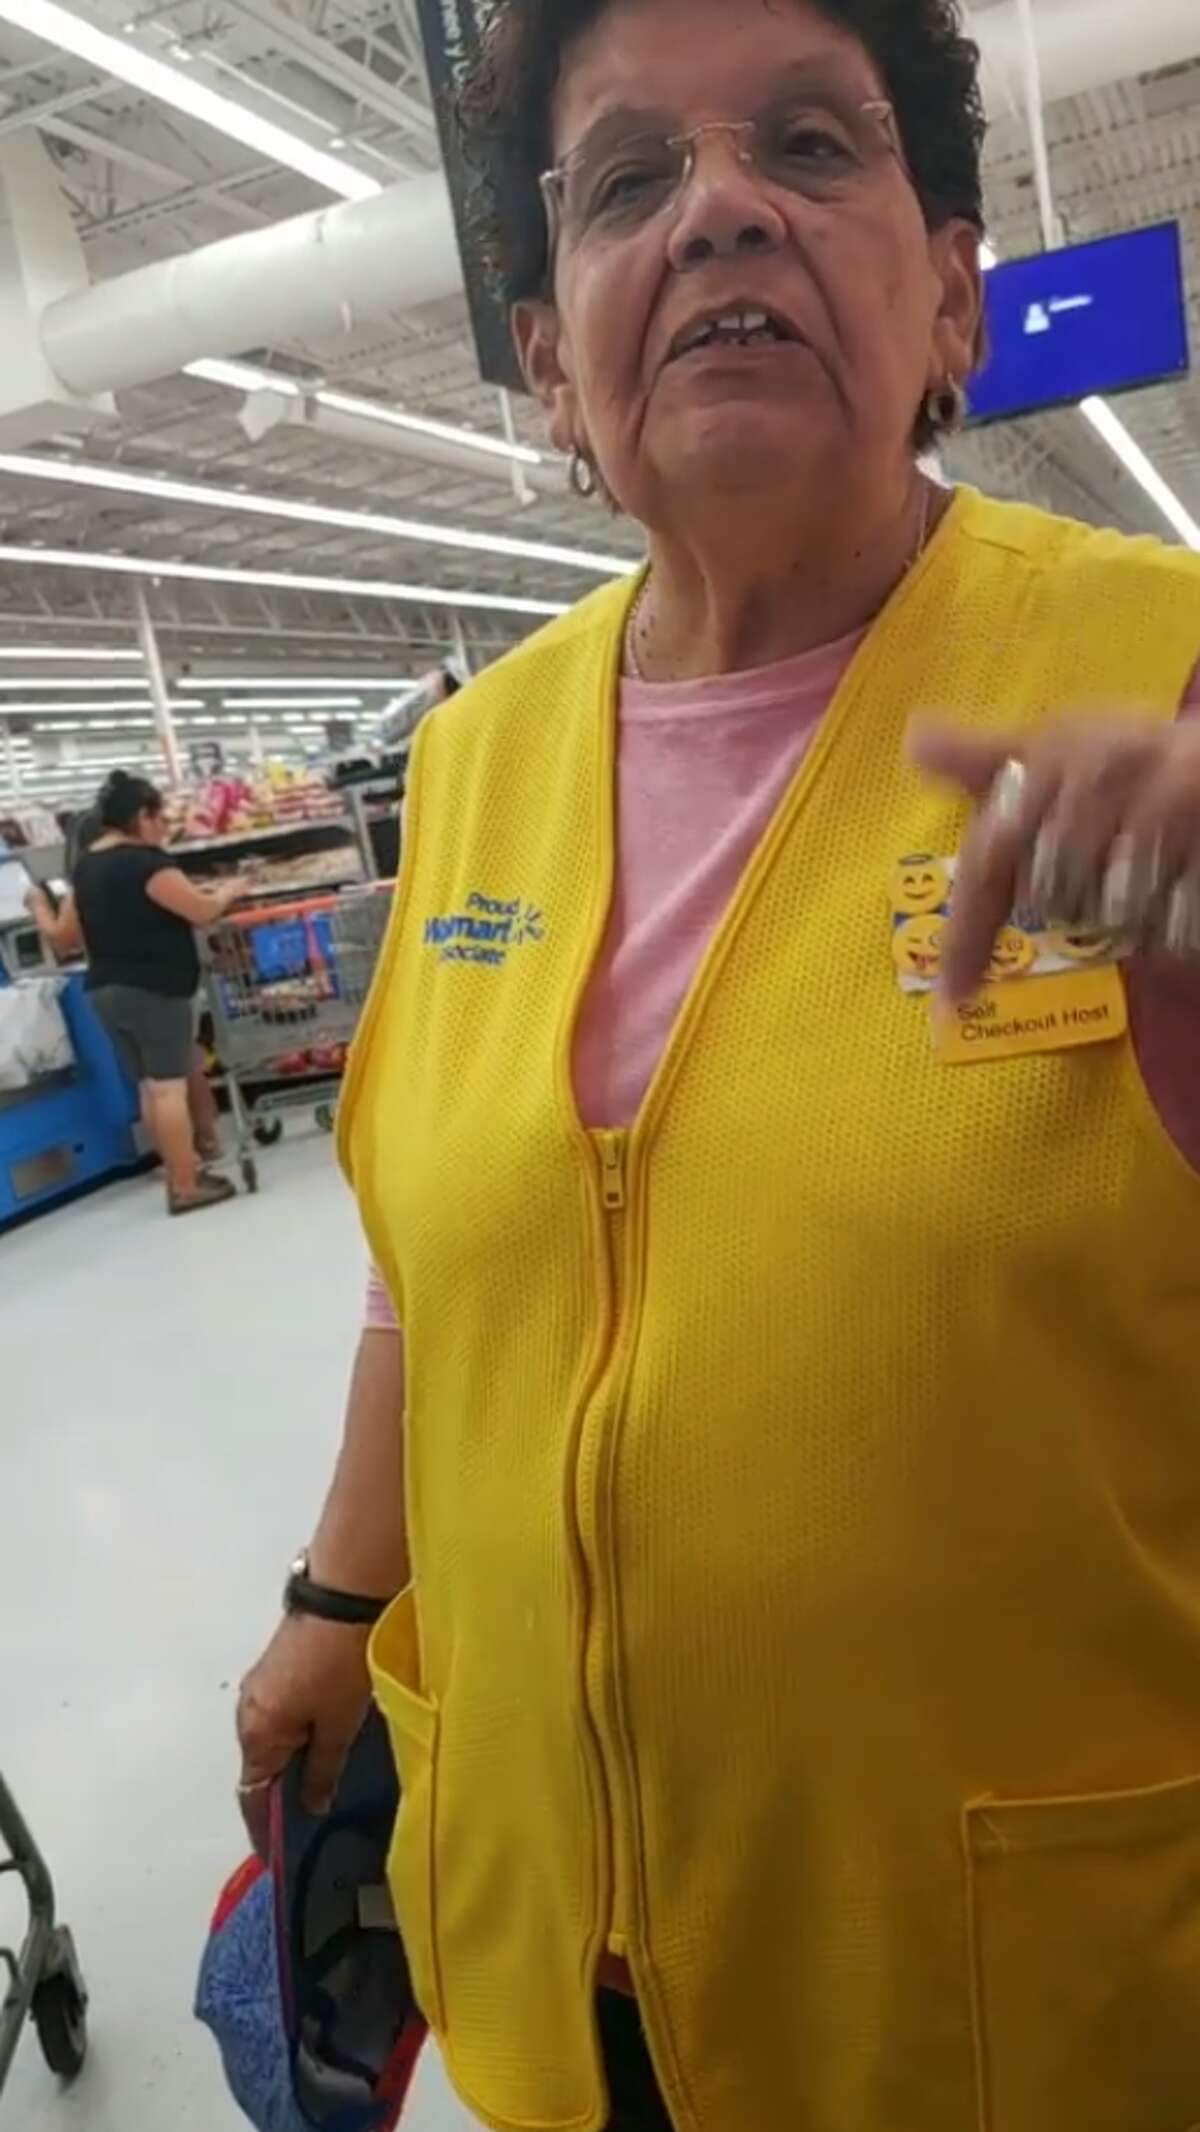 A Houston man said a Walmart employee told him to speak English.